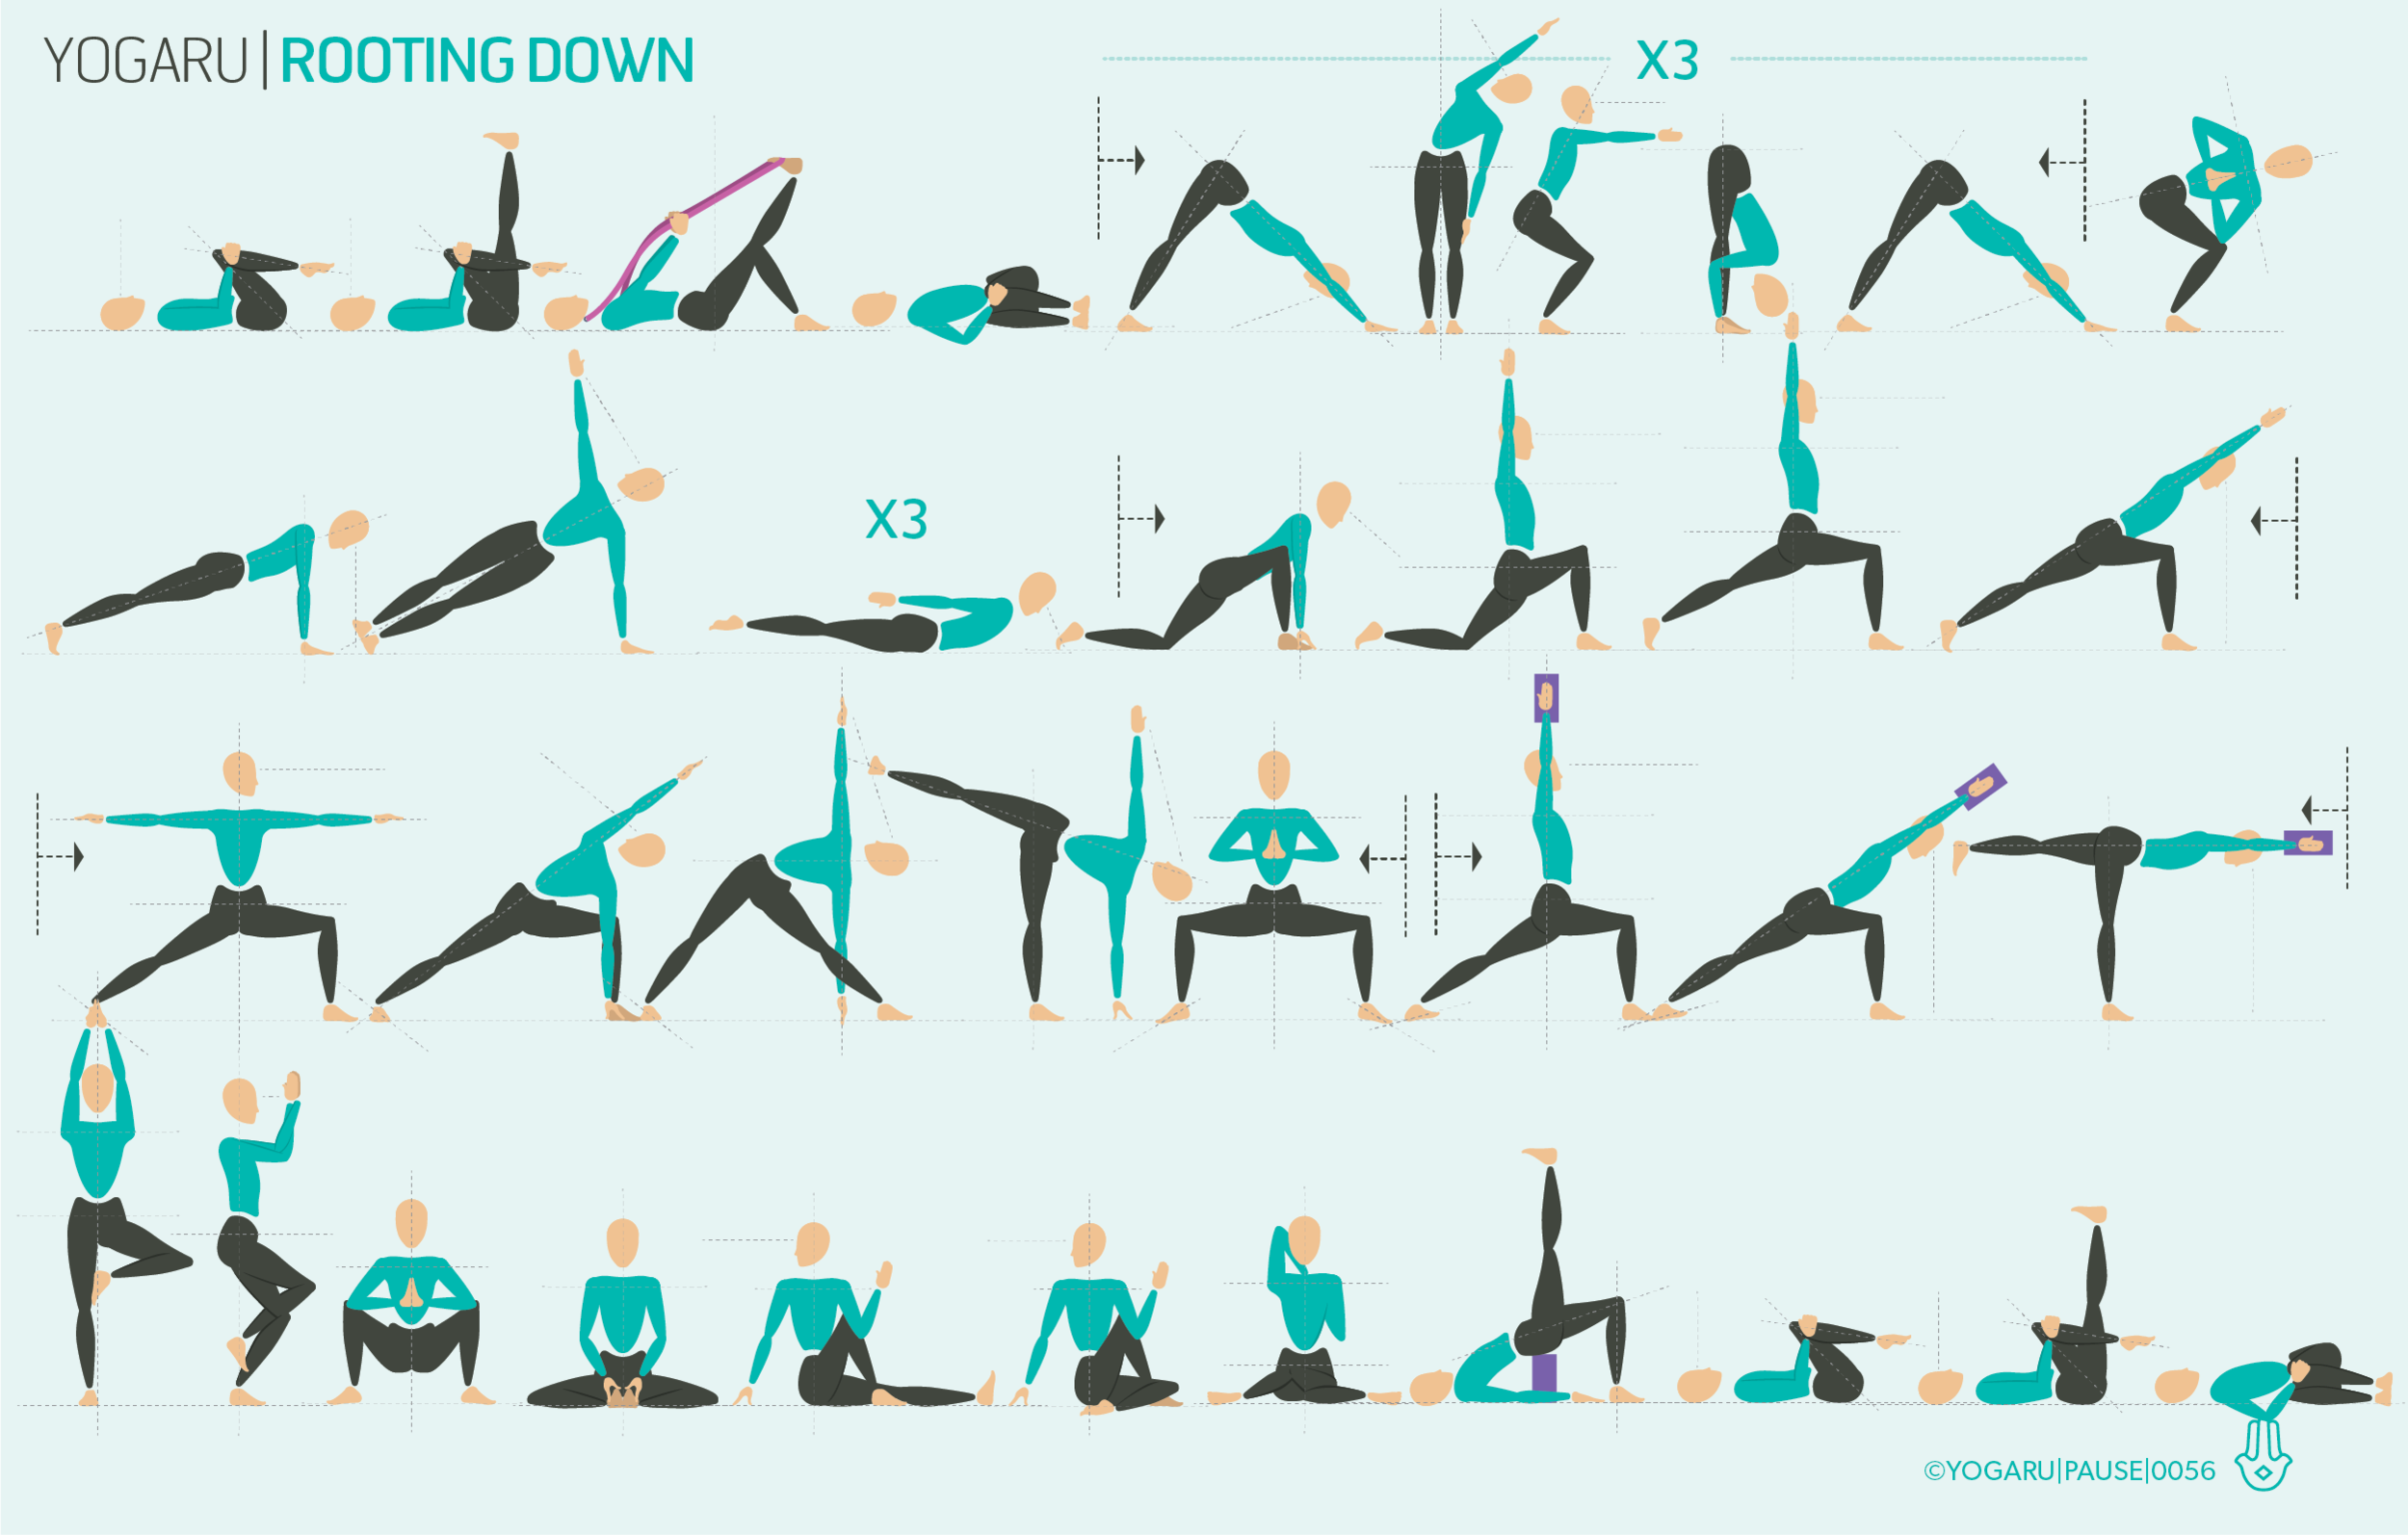 The Best 16 Heart Opening Yoga Poses • Yoga Basics